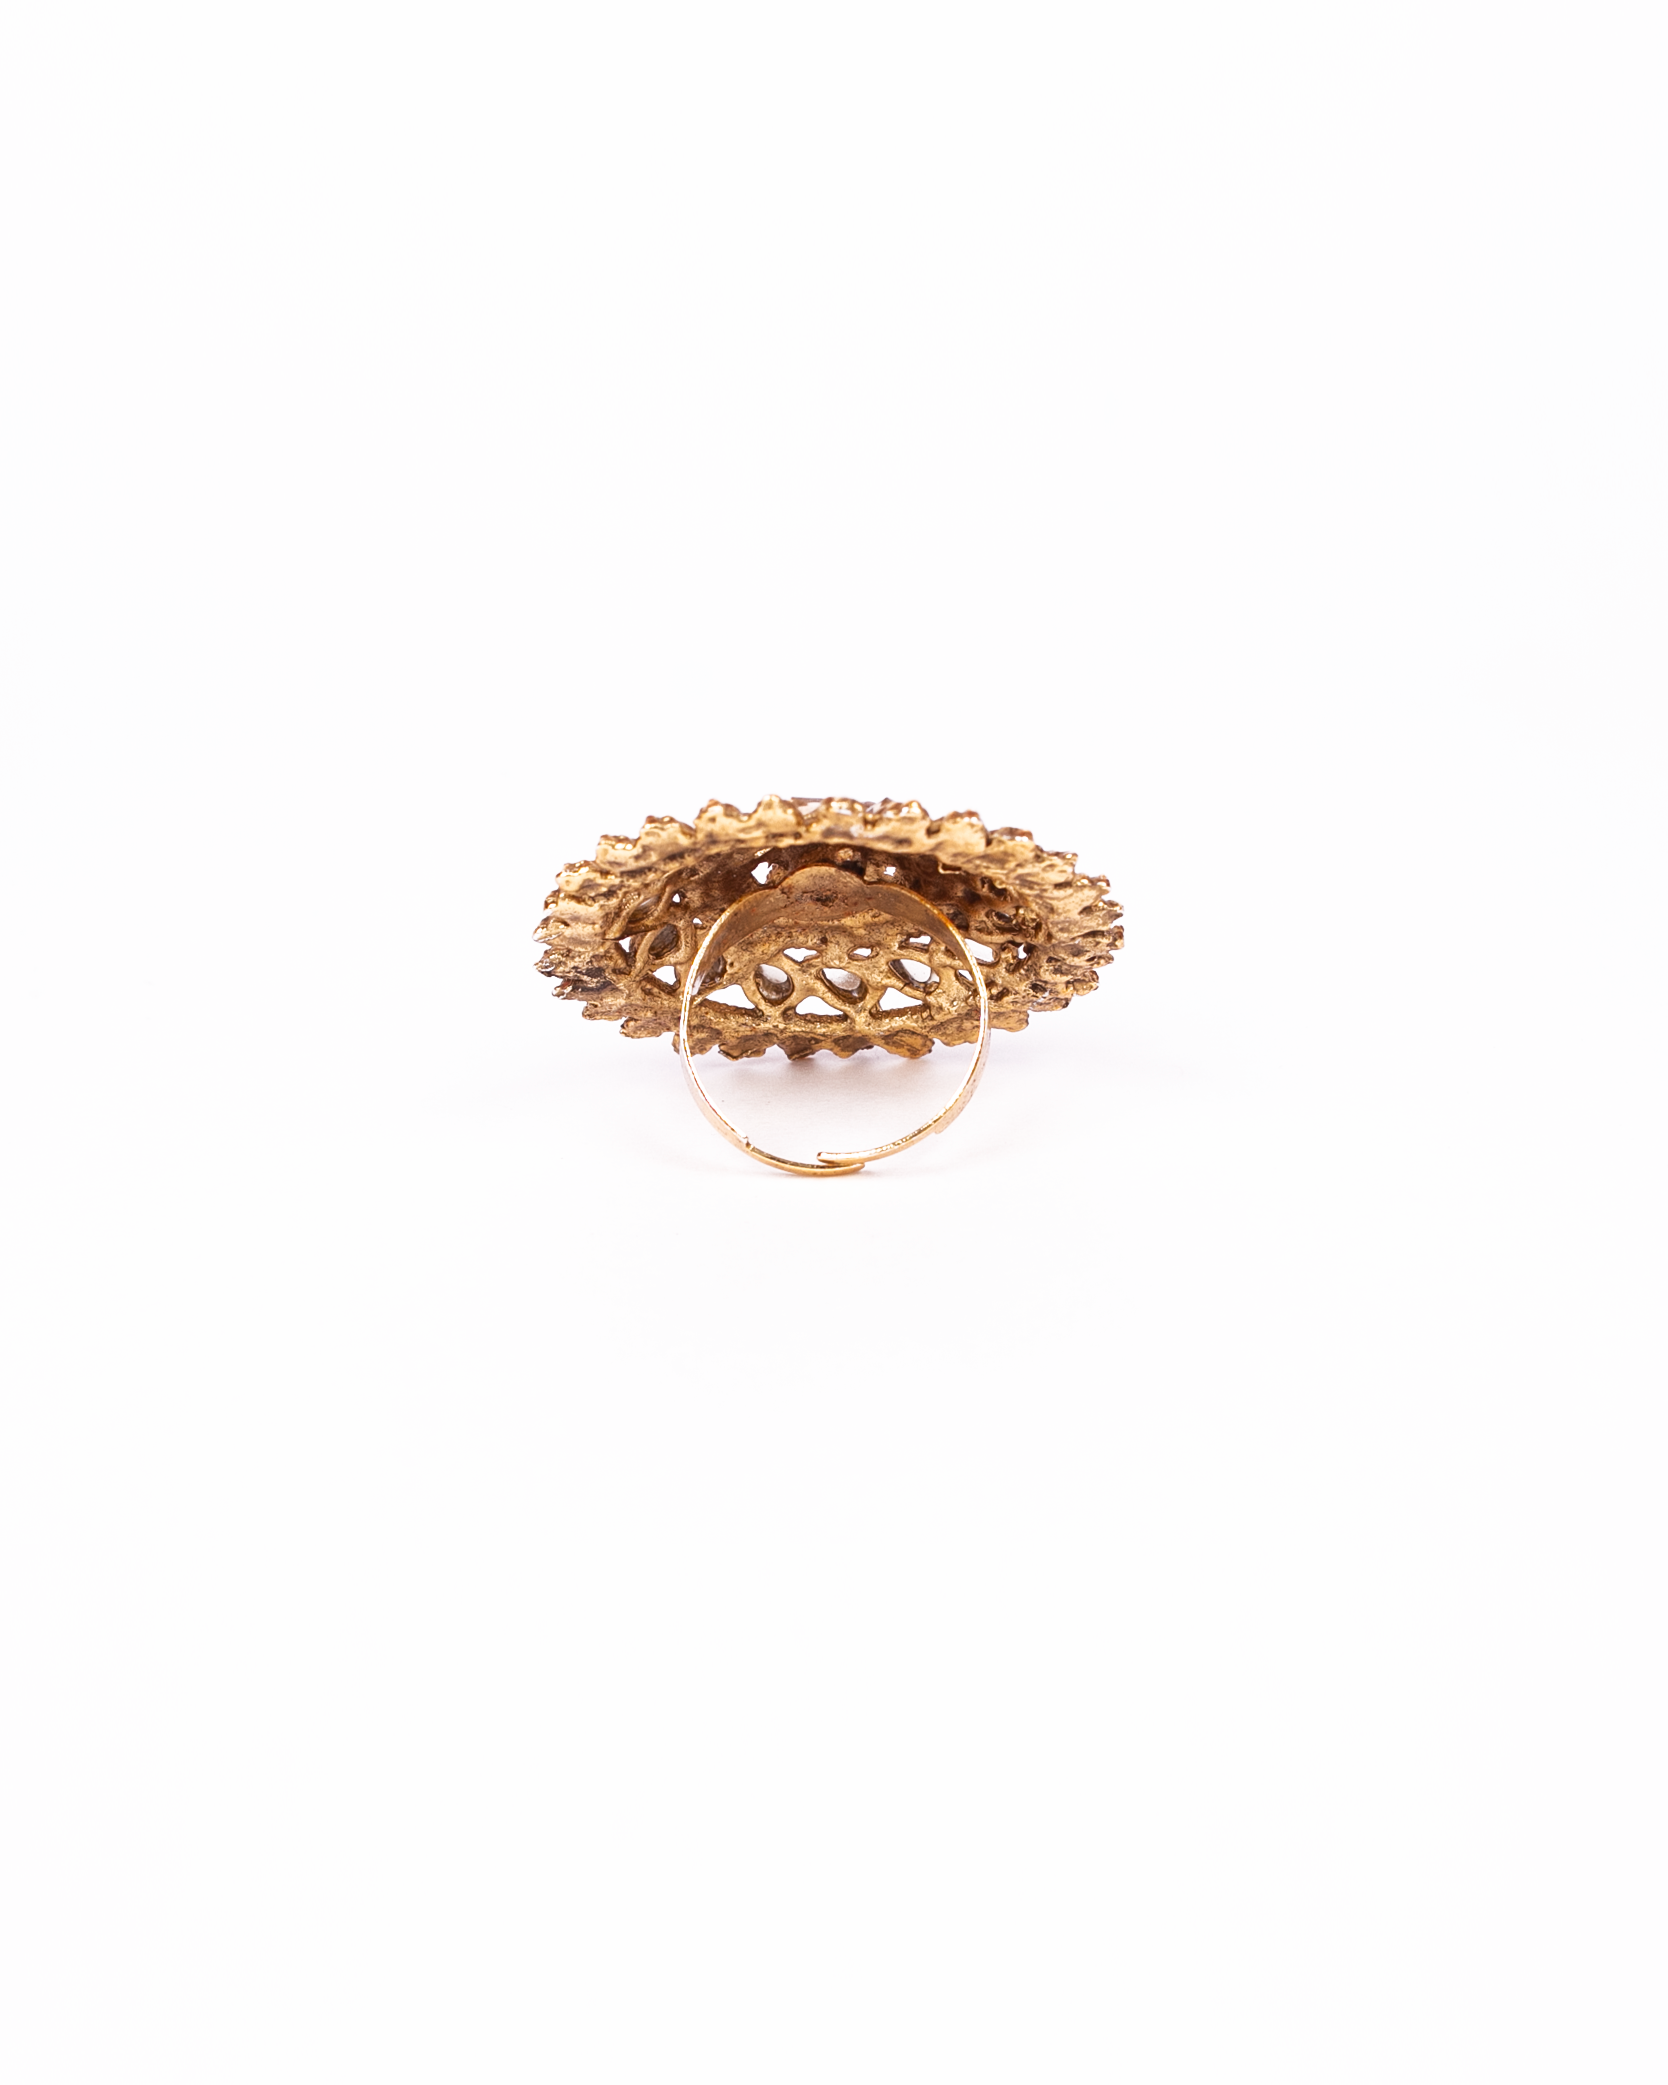 Umbrella Rings | Unique gold jewelry designs, Gold earrings models, Gold  jewellry designs